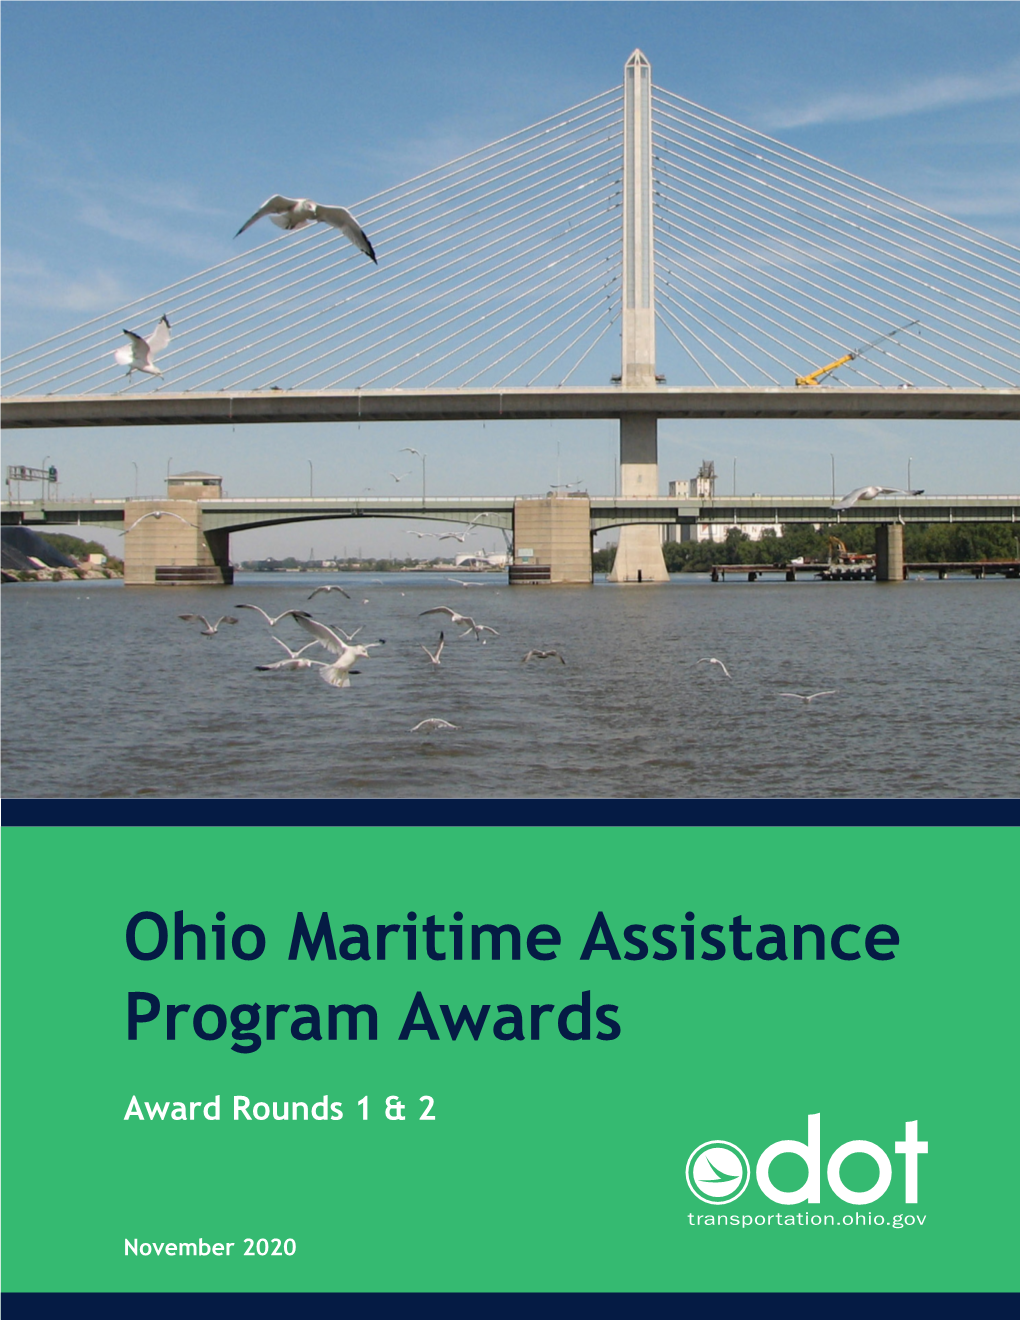 Ohio Maritime Assistance Program Awards Round 2 Cleveland Cuyahoga County Port Authority US Customs Border Patrol Facility